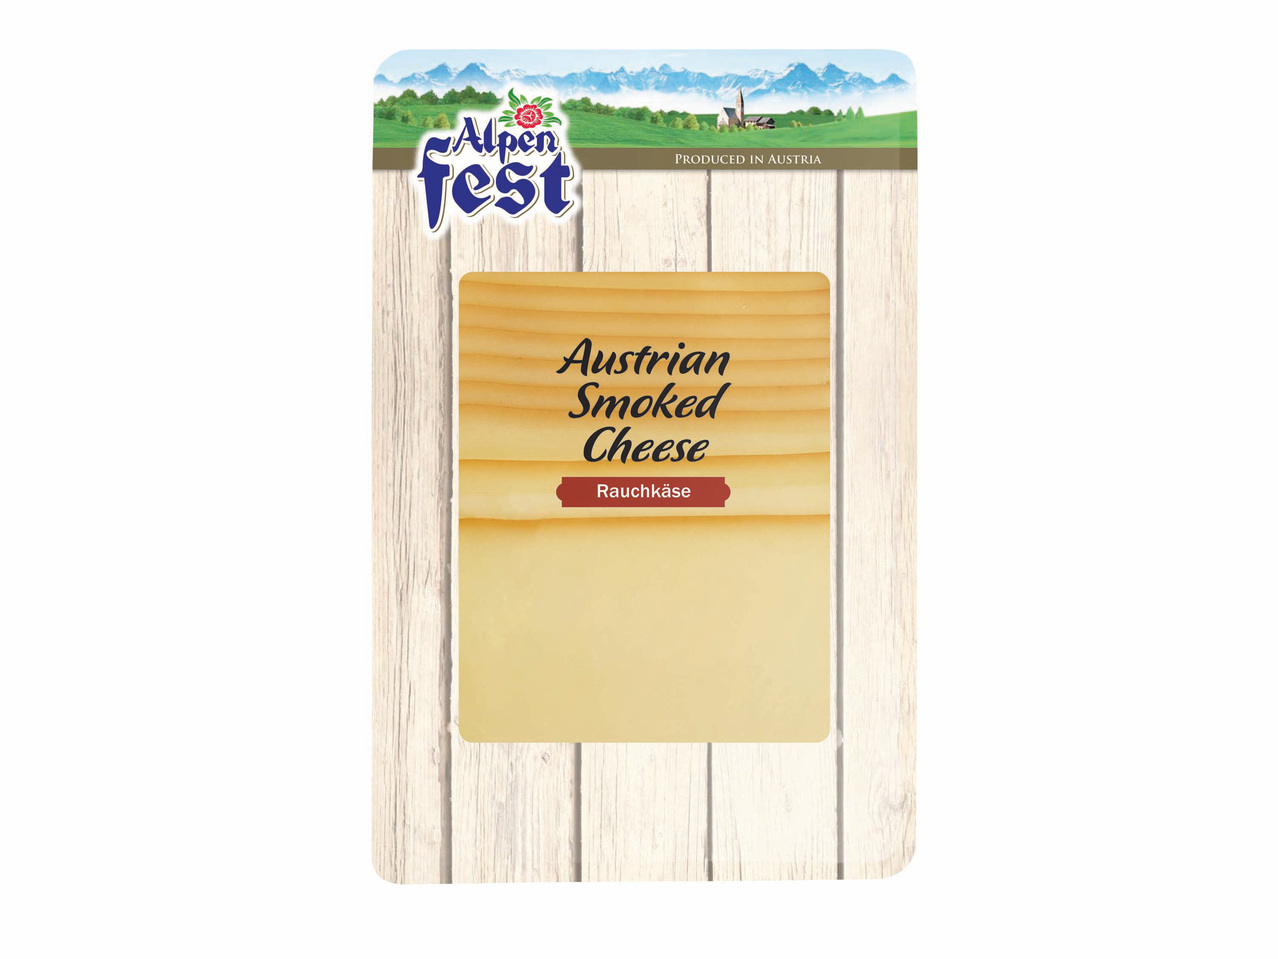 Brânză austriacă feliată